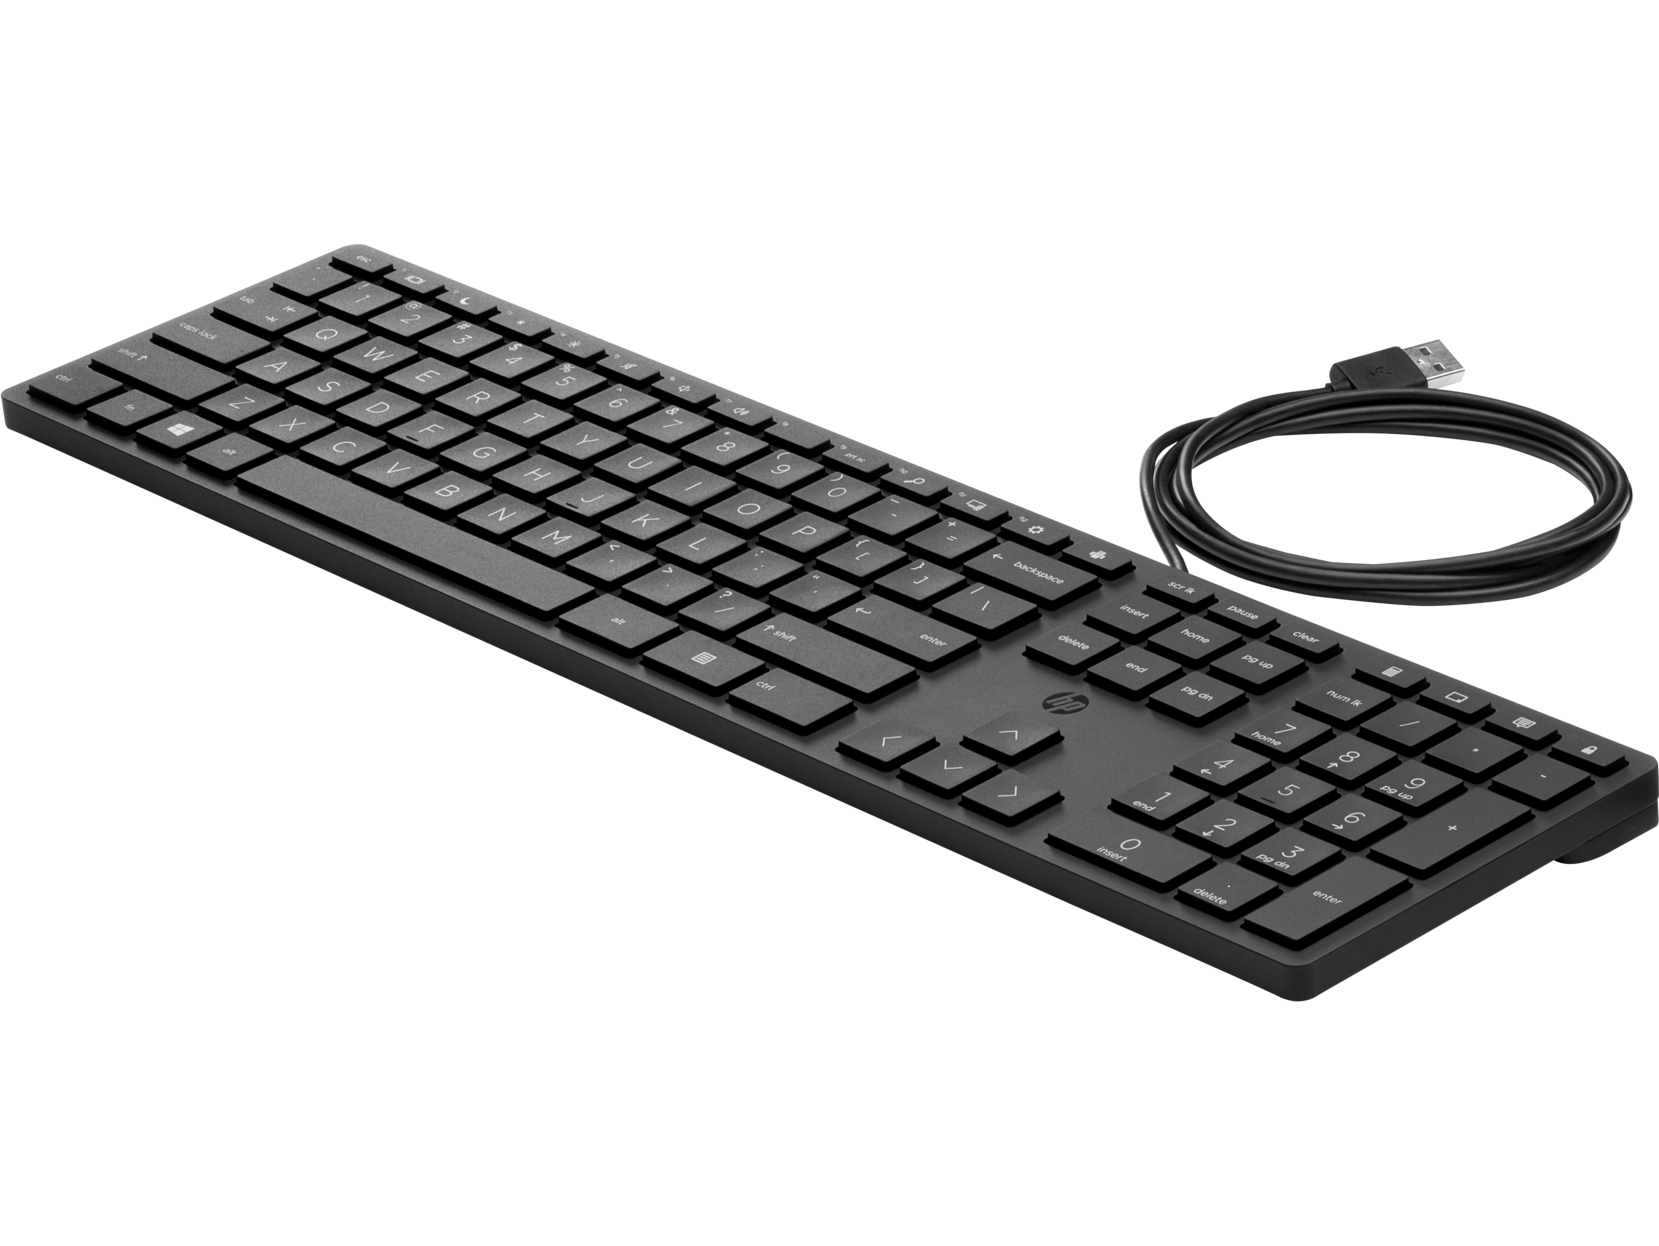 HP Wired Desktop Keyboard 320K UK Keyboard Black USB New